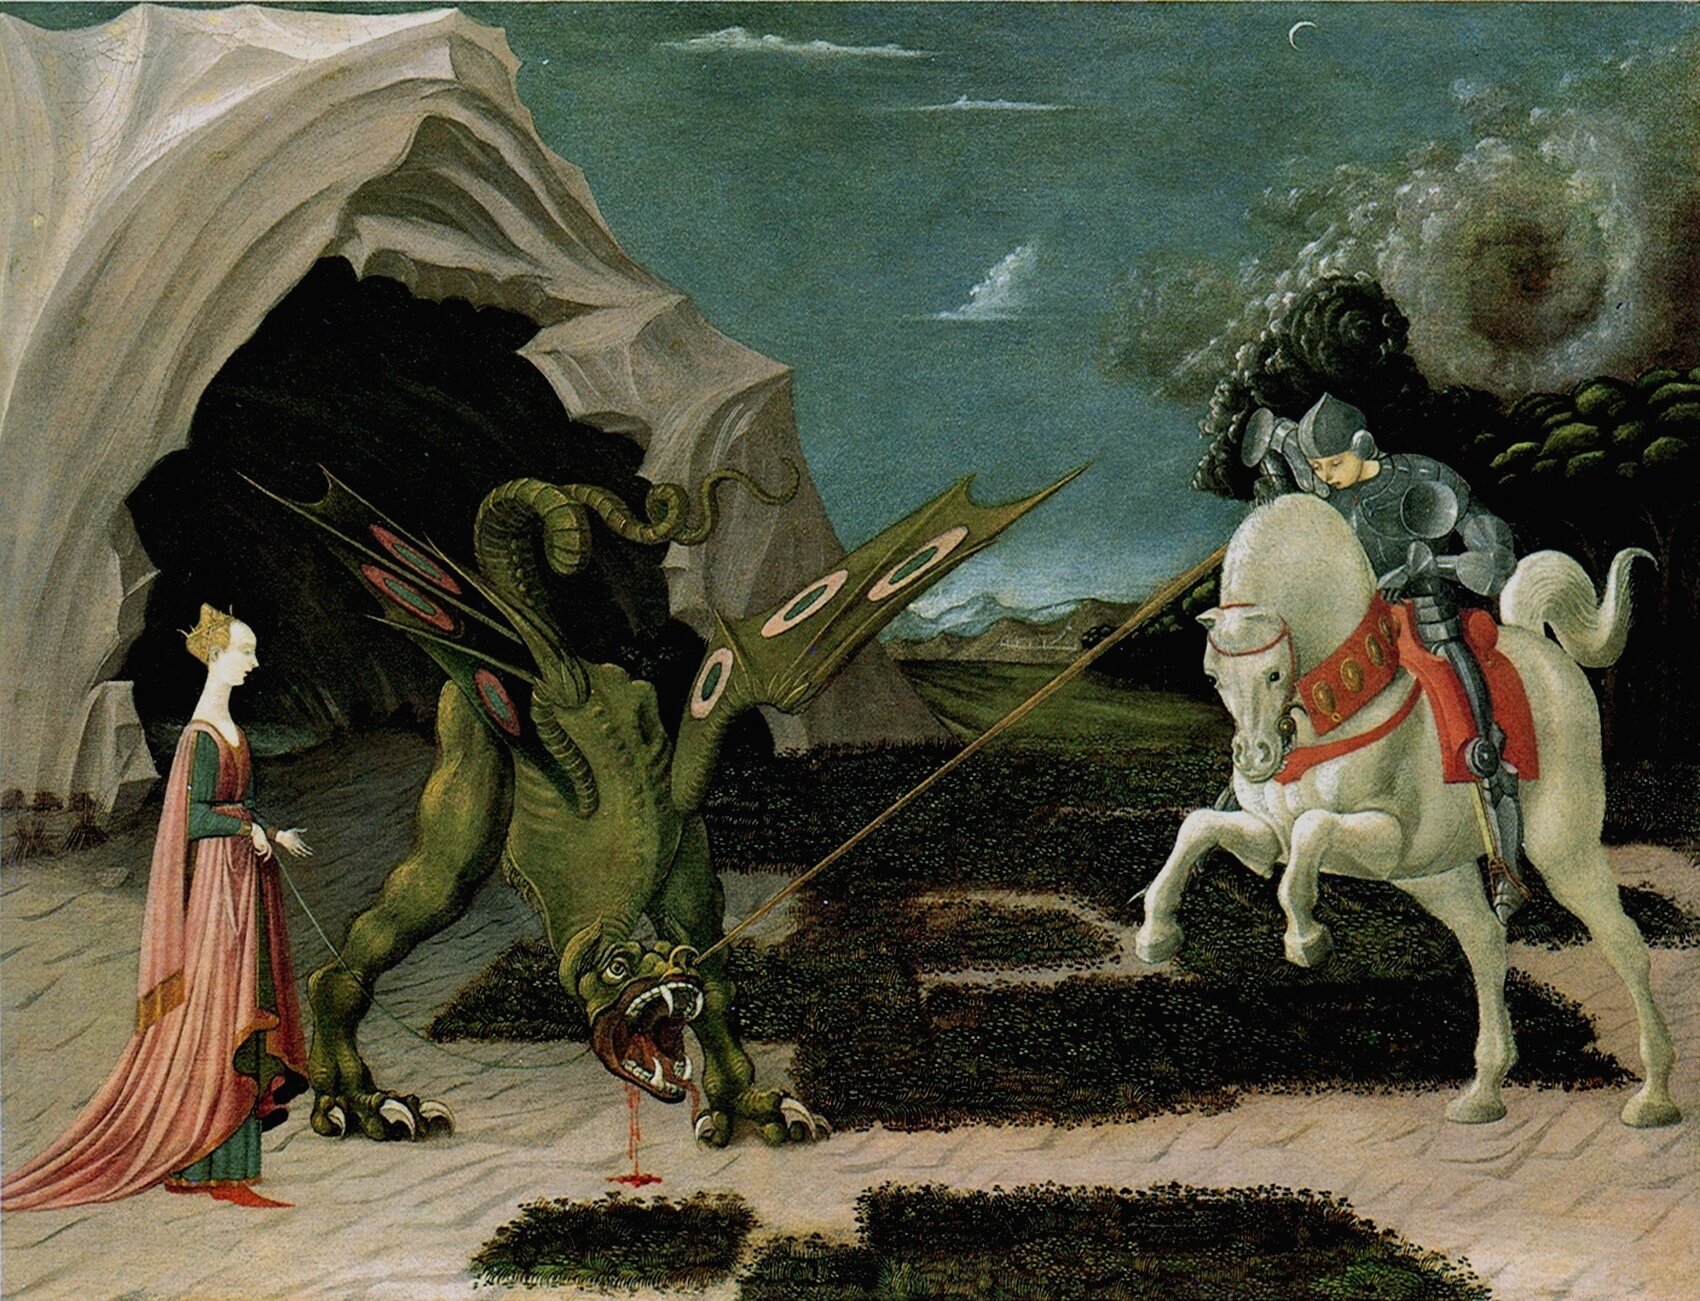 Święty Jerzy i smok Źródło: Paolo Uccello, Święty Jerzy i smok, 1455–1460, olej na płótnie., domena publiczna.